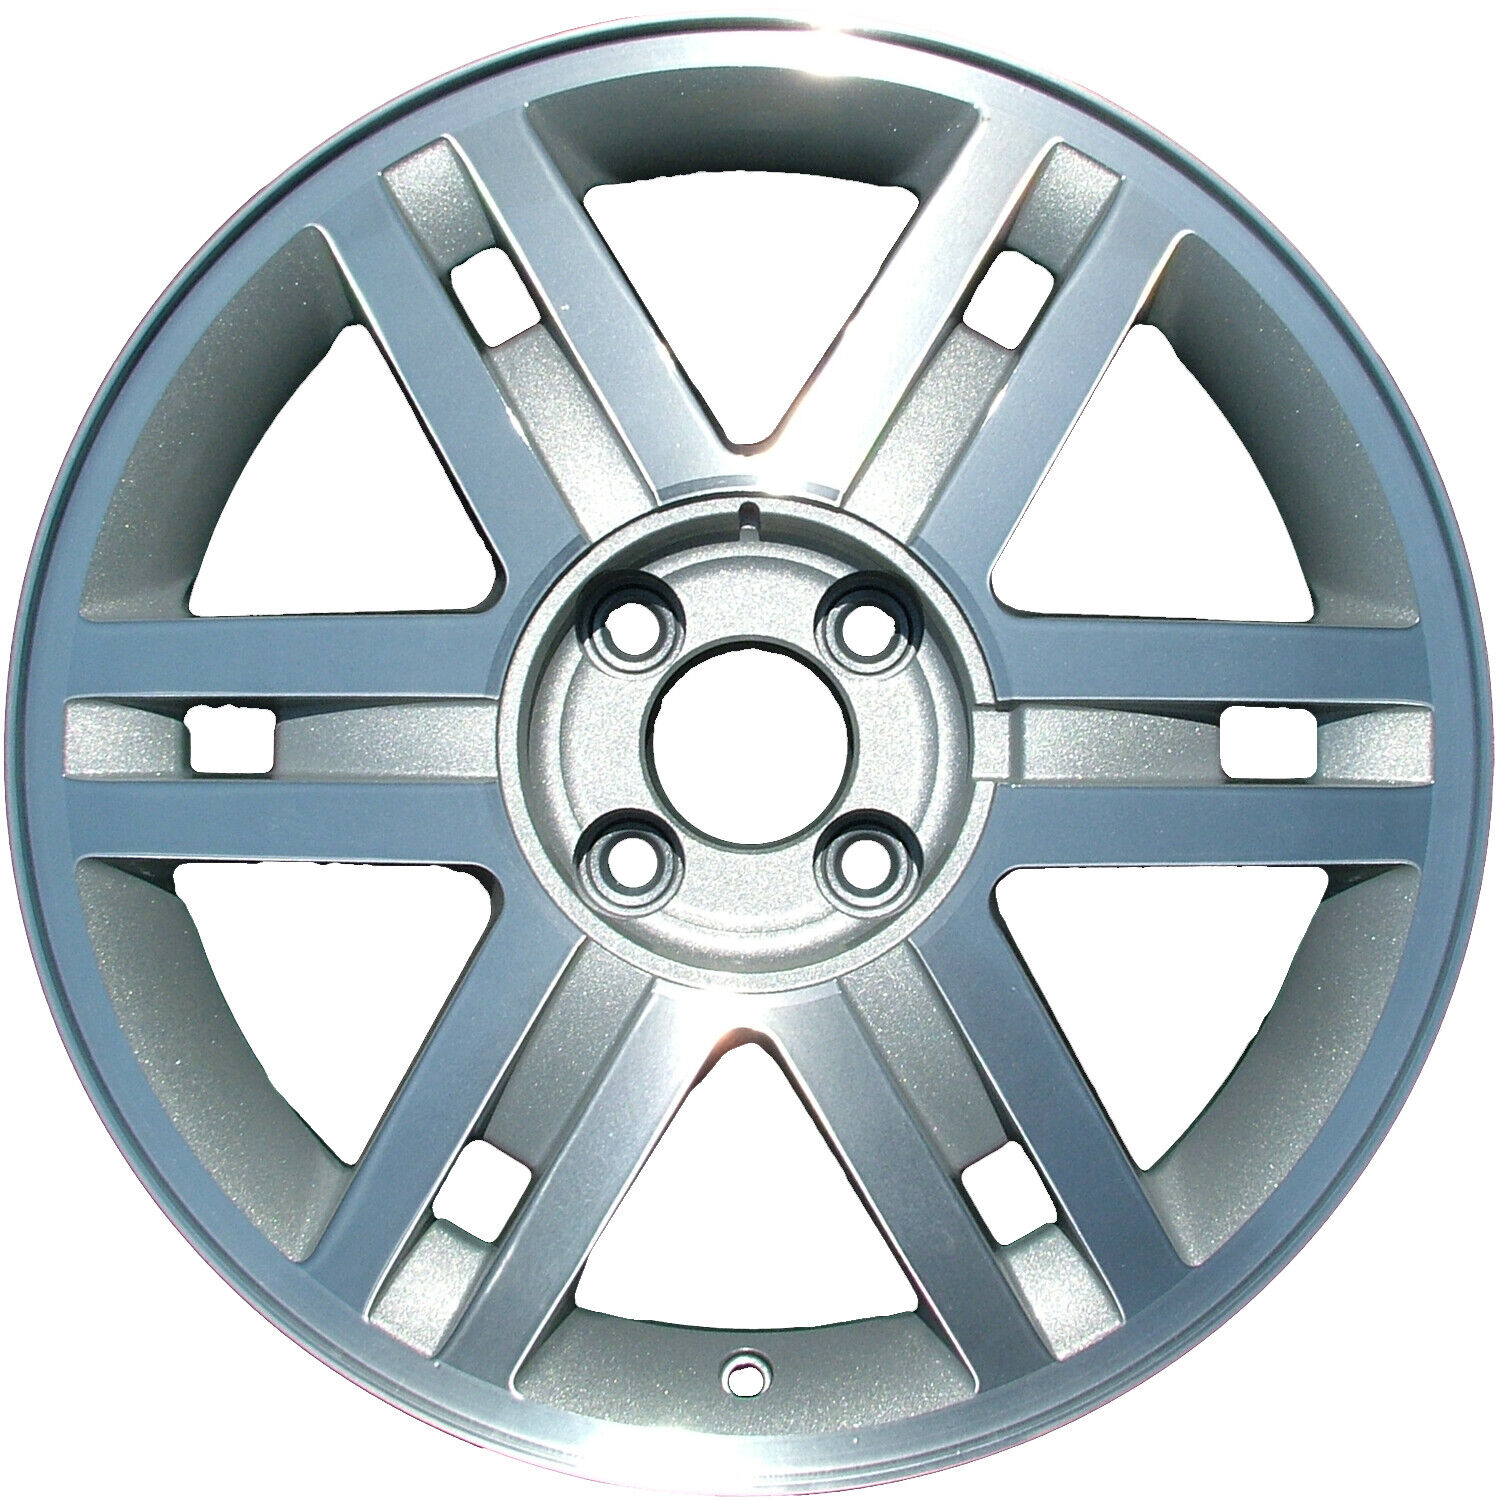 03433 Reconditioned OEM Aluminum Wheel 17x6.5 fits 2001-2002 Mercury Cougar